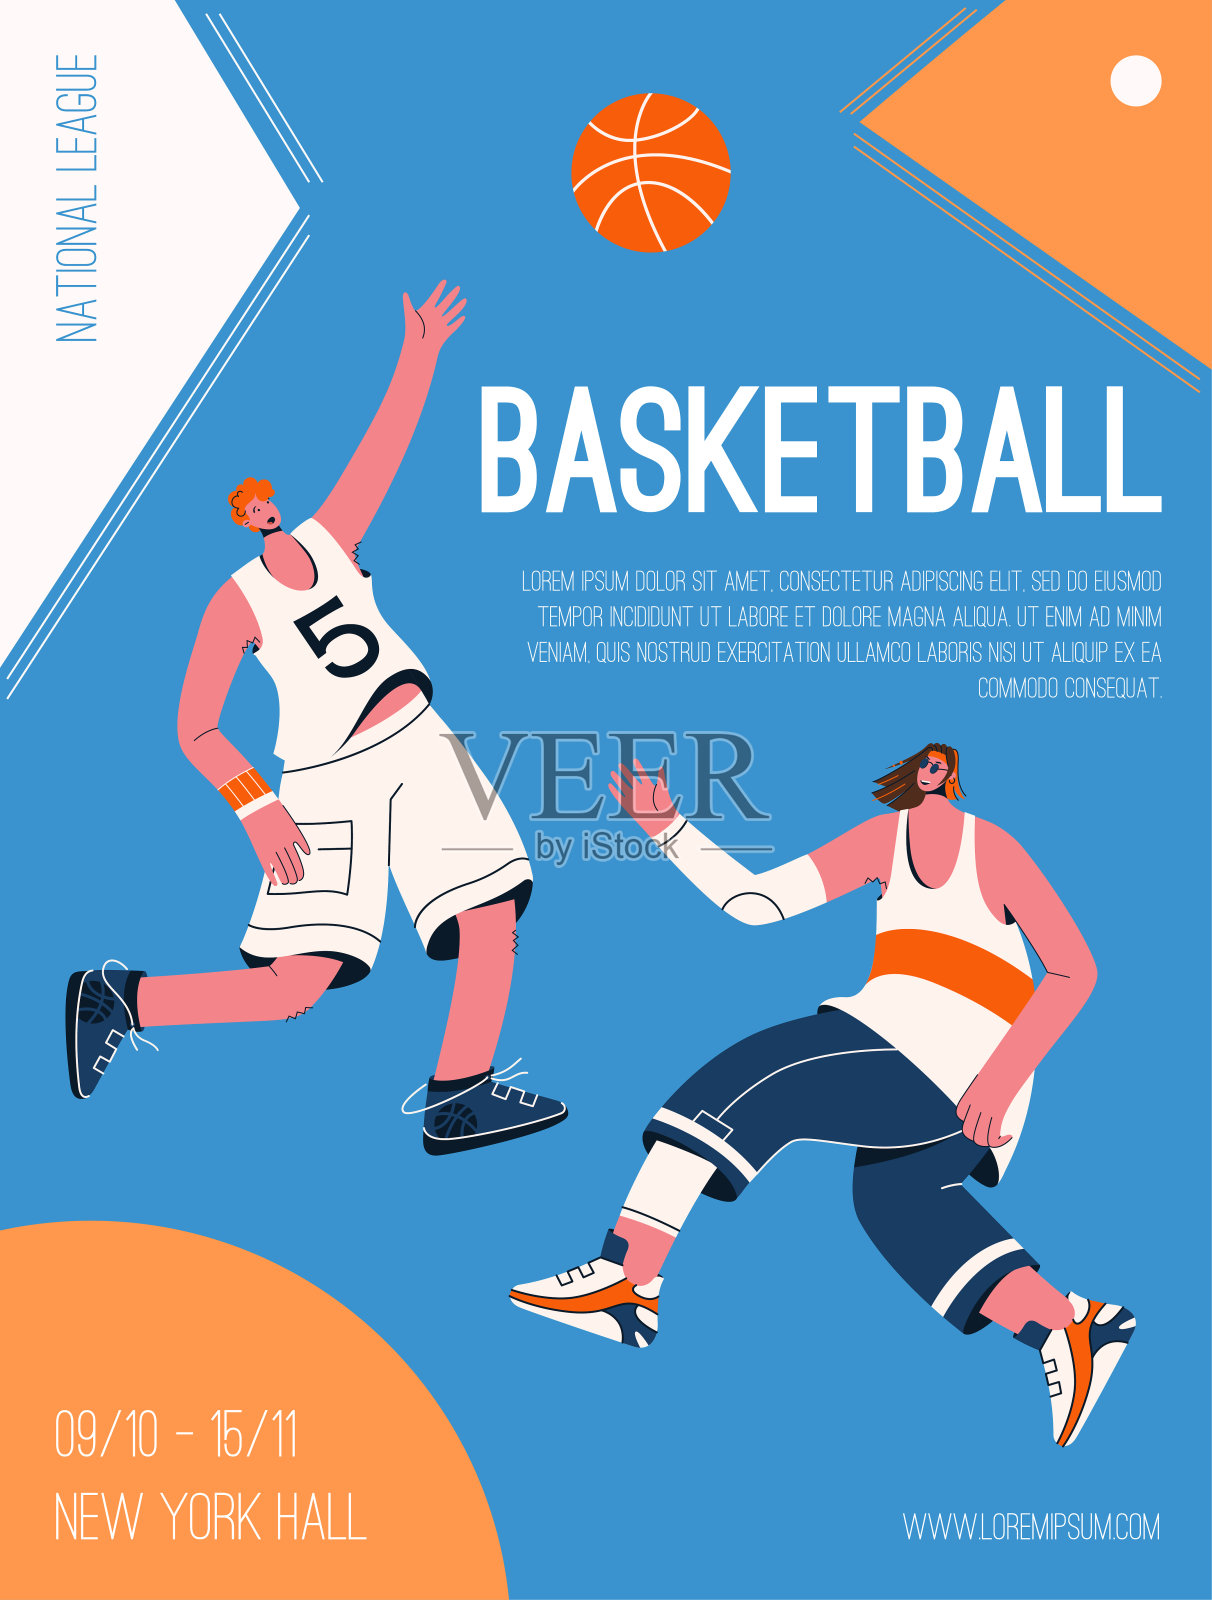 矢量海报的篮球国家联盟的概念设计模板素材